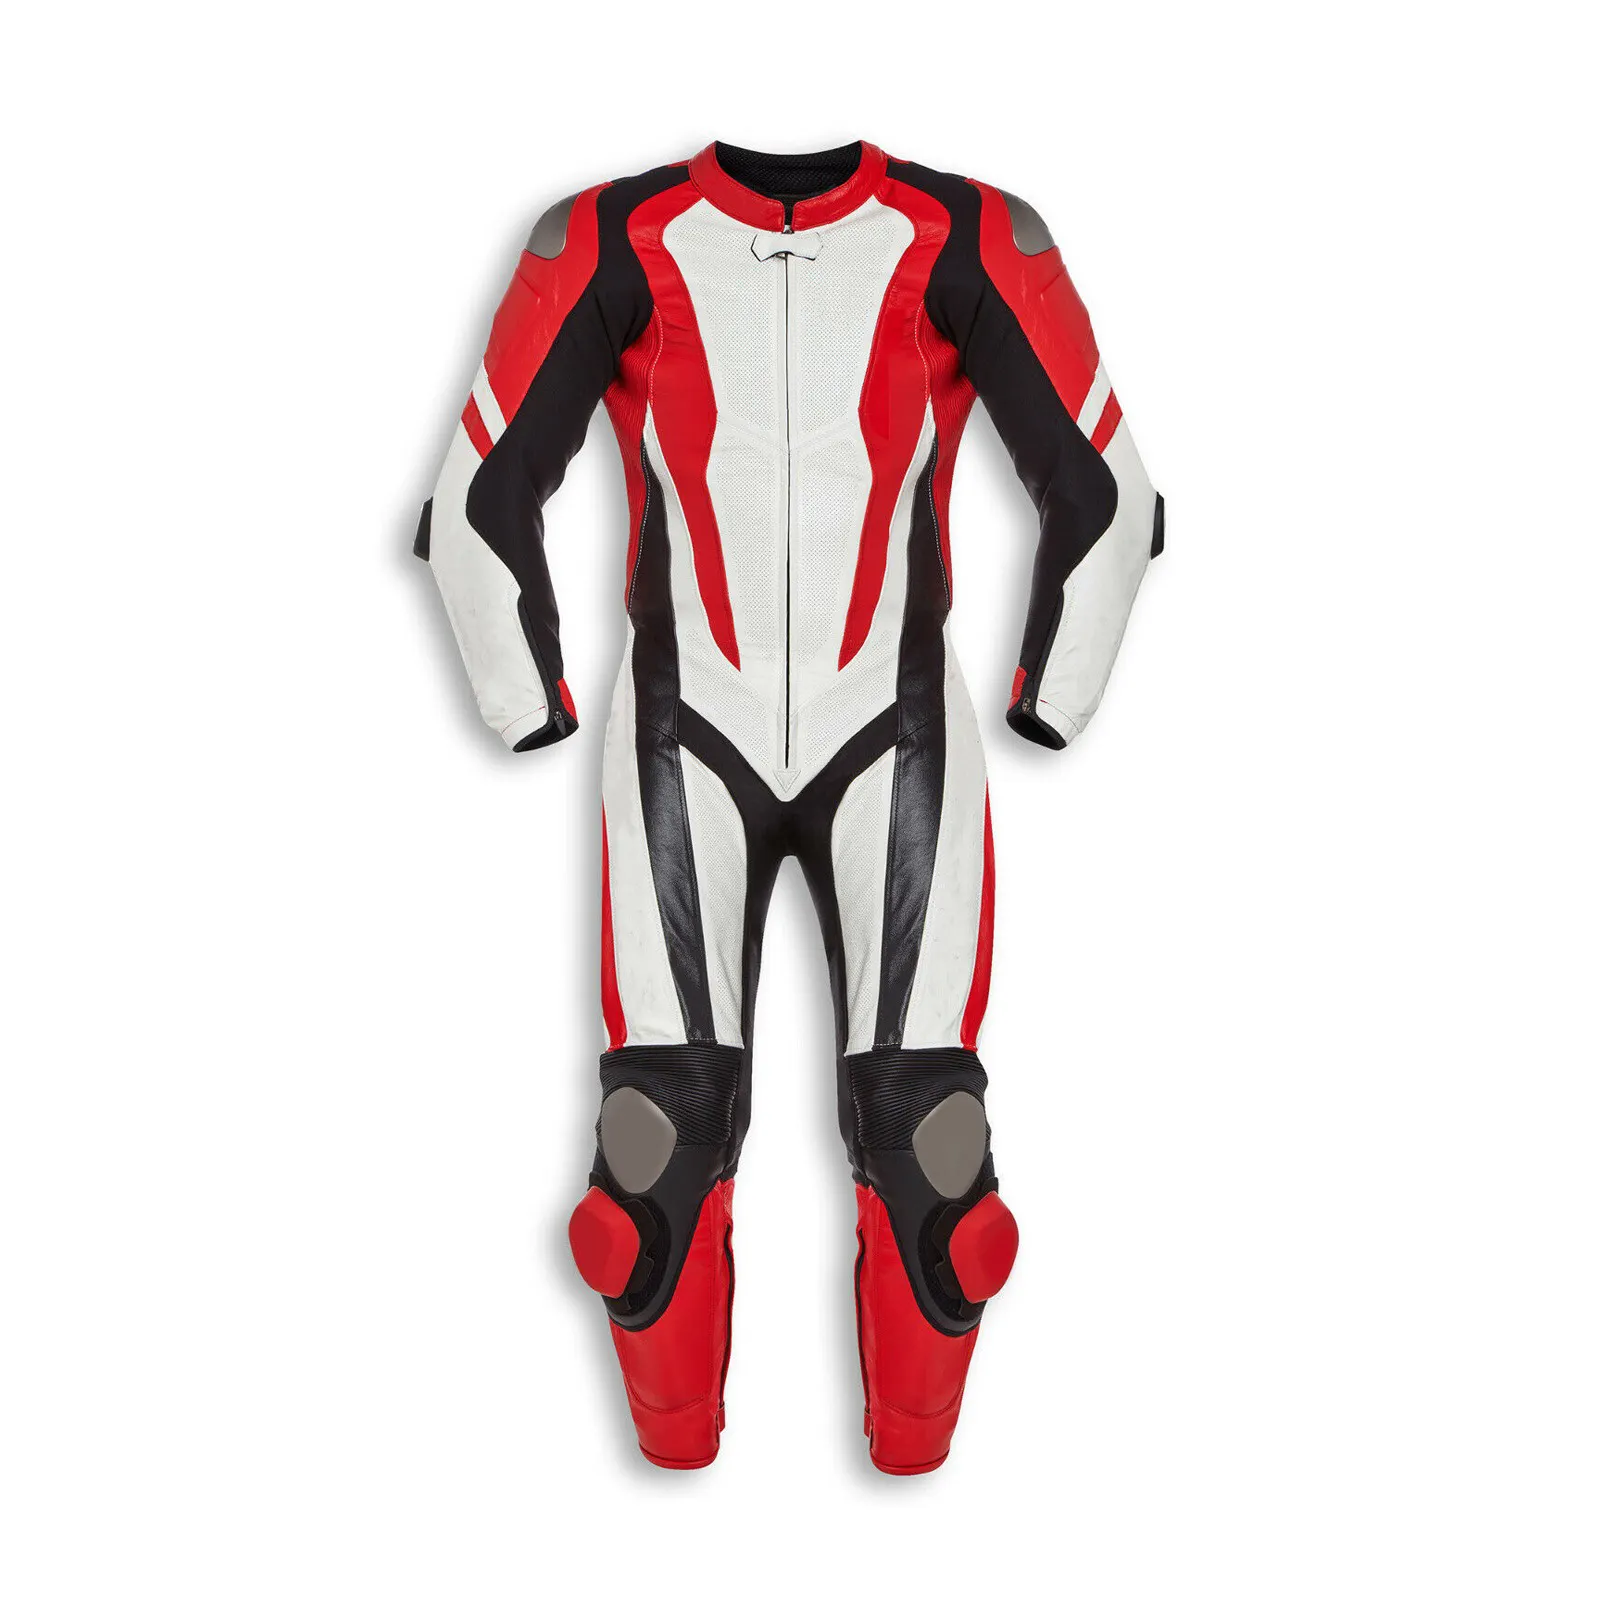 Deri motosiklet kıyafeti erkek motosiklet sürme koruması 100% hakiki deri yarış kıyafeti